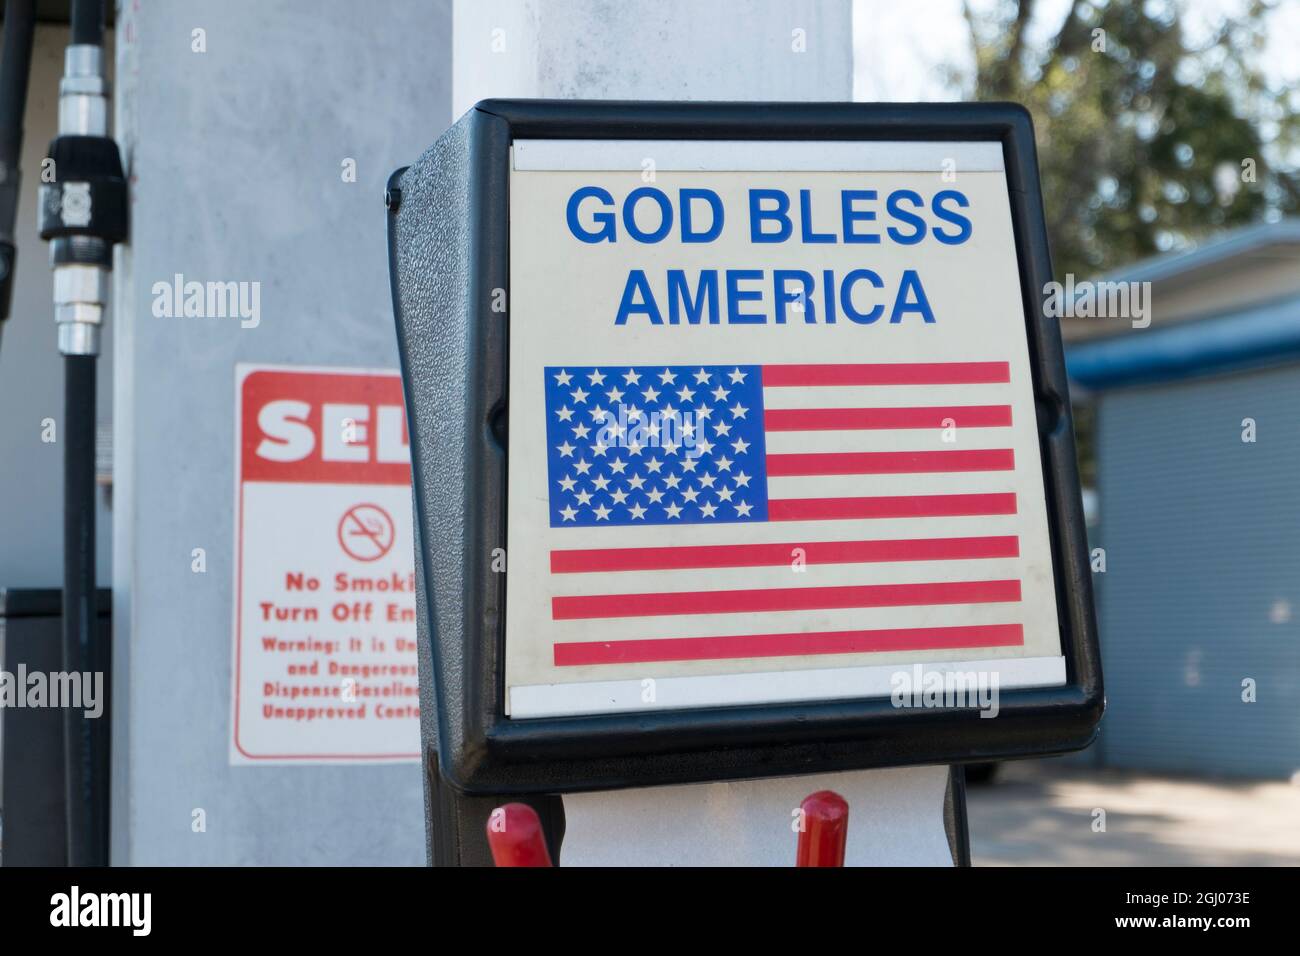 An einer Tankstelle, ein Gott segne Amerika Aufkleber mit American Flag auf dem Waschkübel. In Arlington, Virginia. Stockfoto